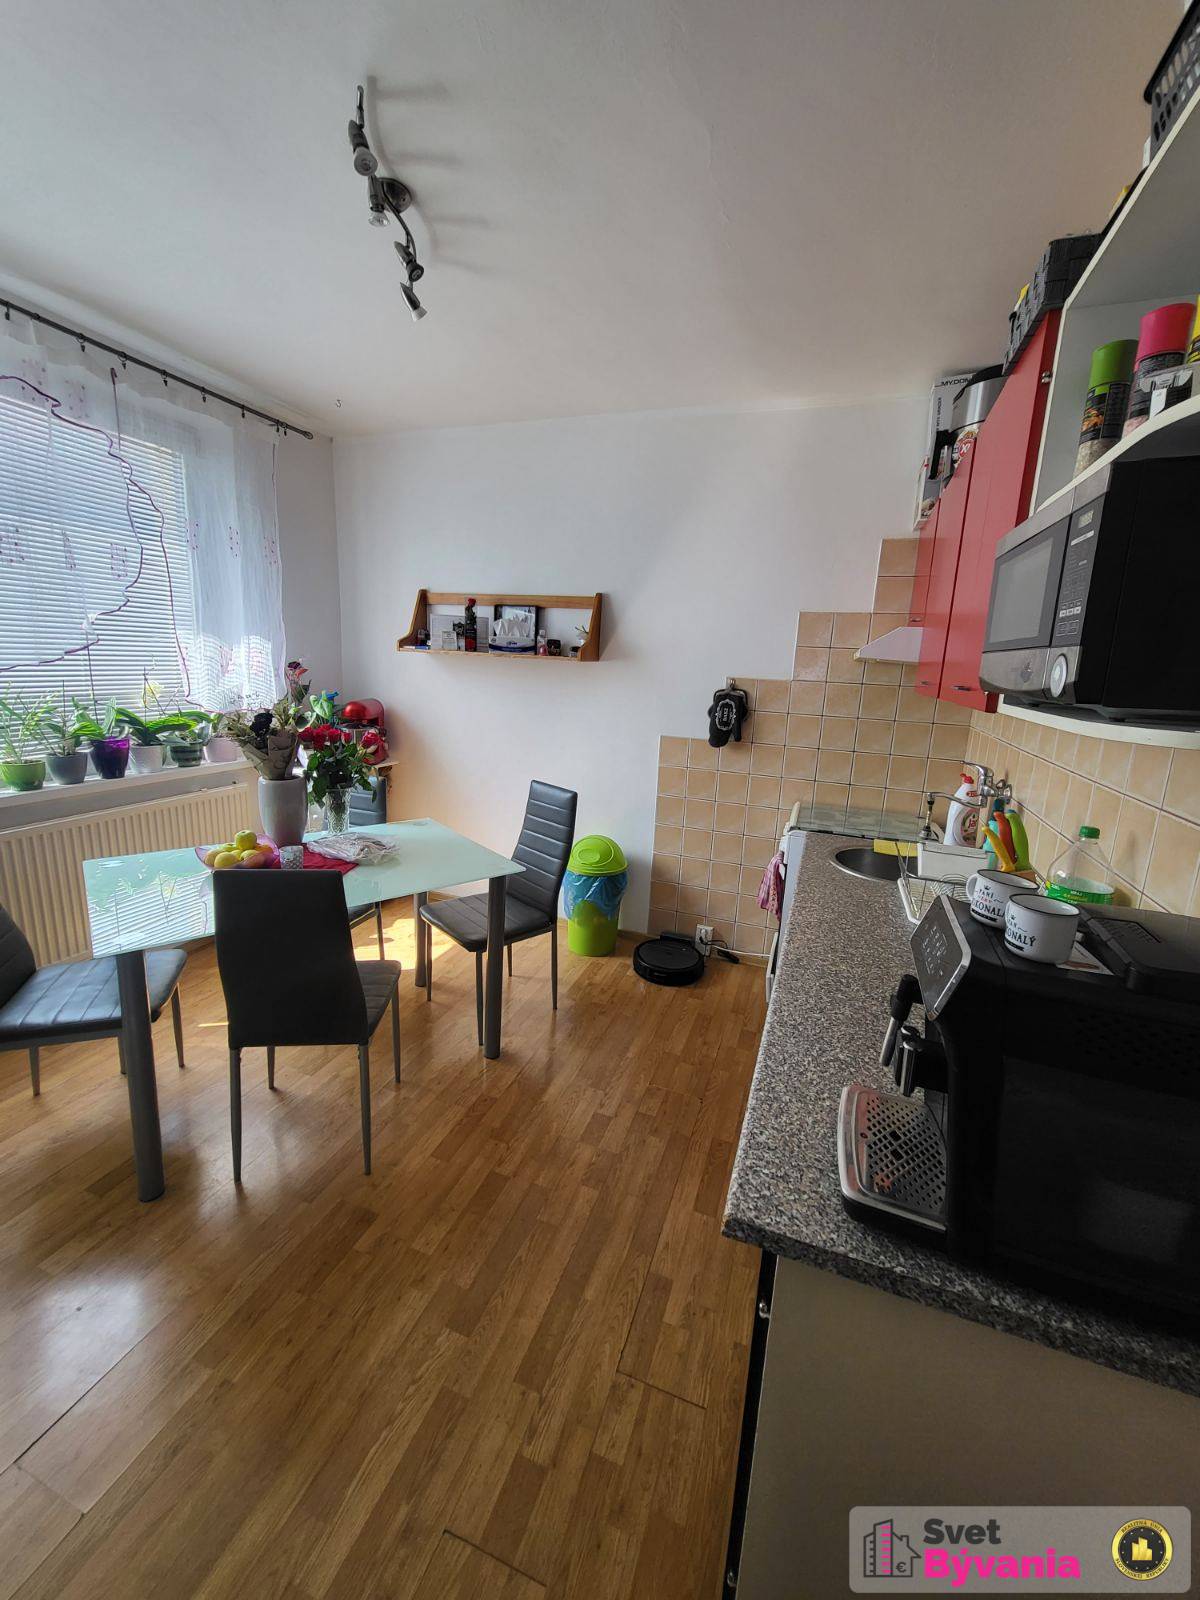 2-izbový byt na predaj v Prešove